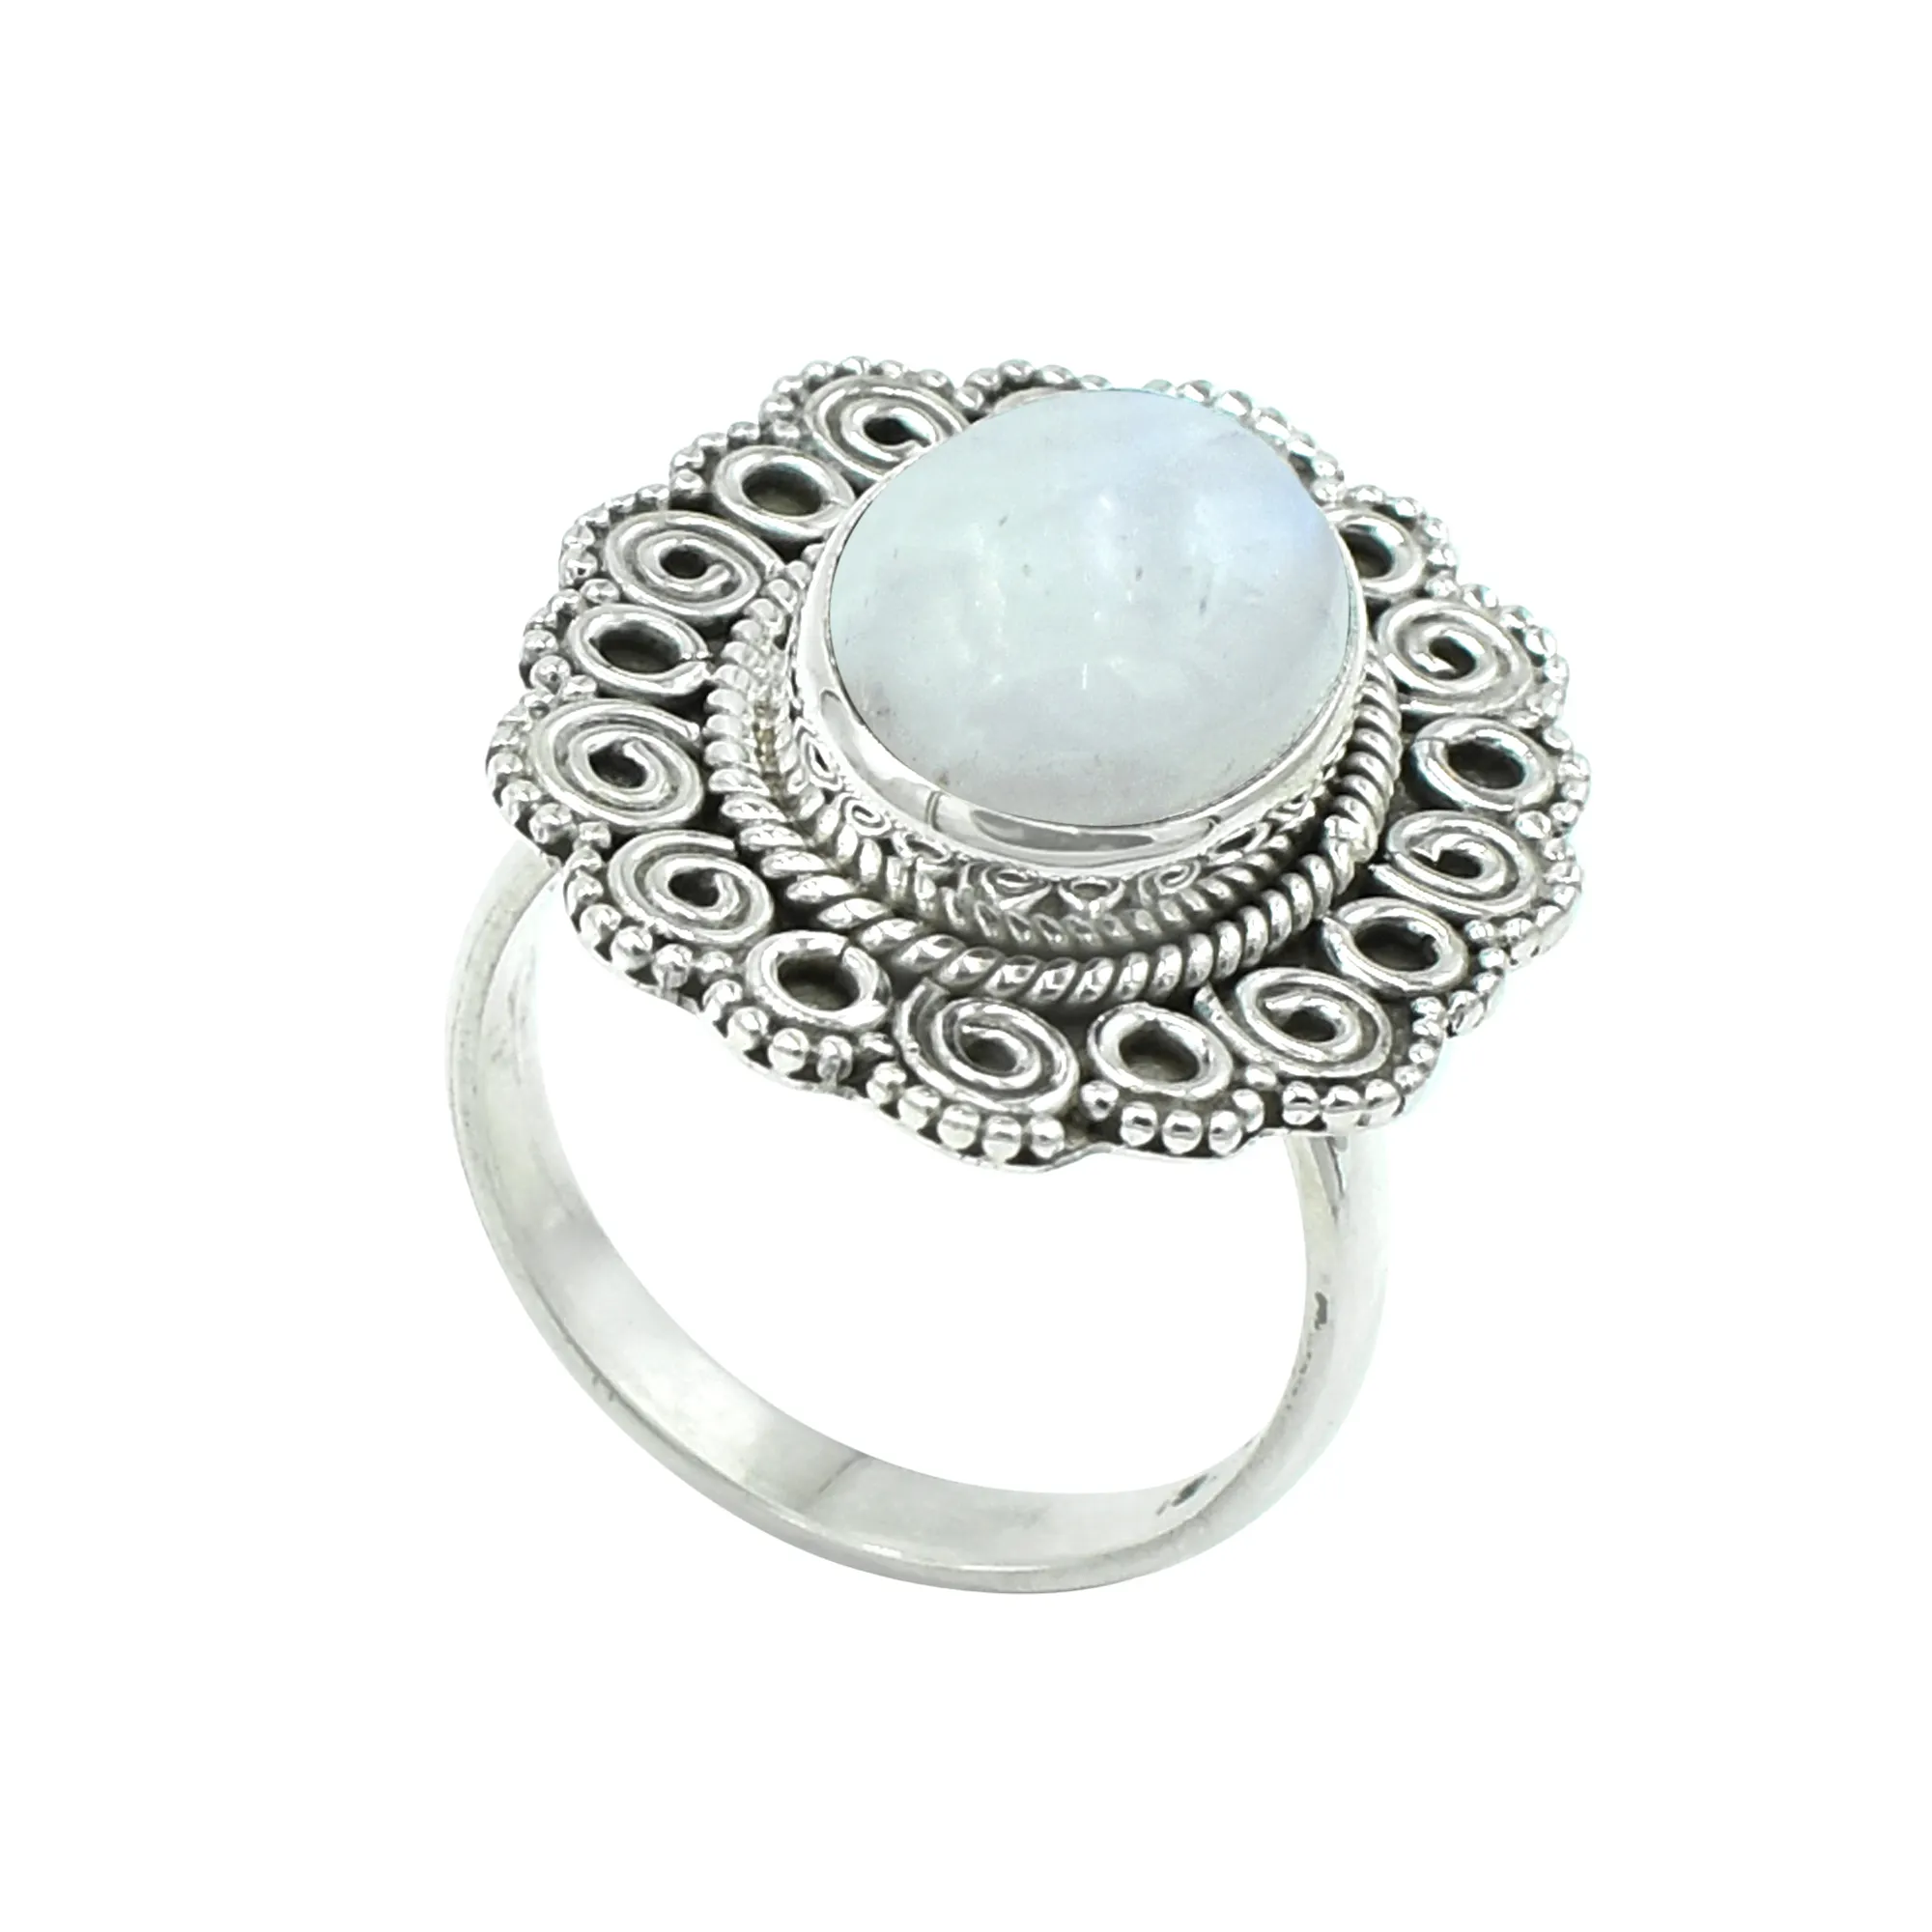 Cầu Vồng Tự Nhiên Moonstone Đá Quý Nhẫn 925 Sterling Silver Rings Ấn Độ Handmade Silver Jewelry Nhà Sản Xuất